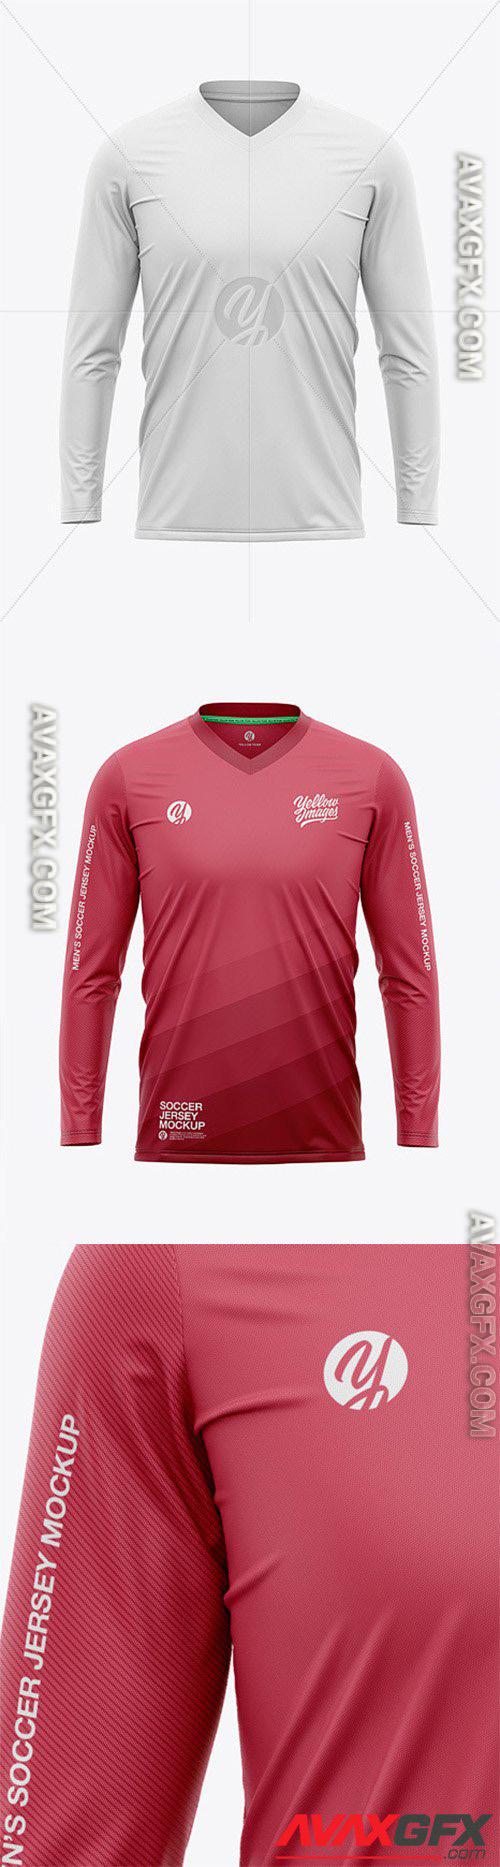 Men’s Long Sleeve Soccer Jersey T-shirt Mockup - Front View - Football Jersey Soccer T-shirt 54992